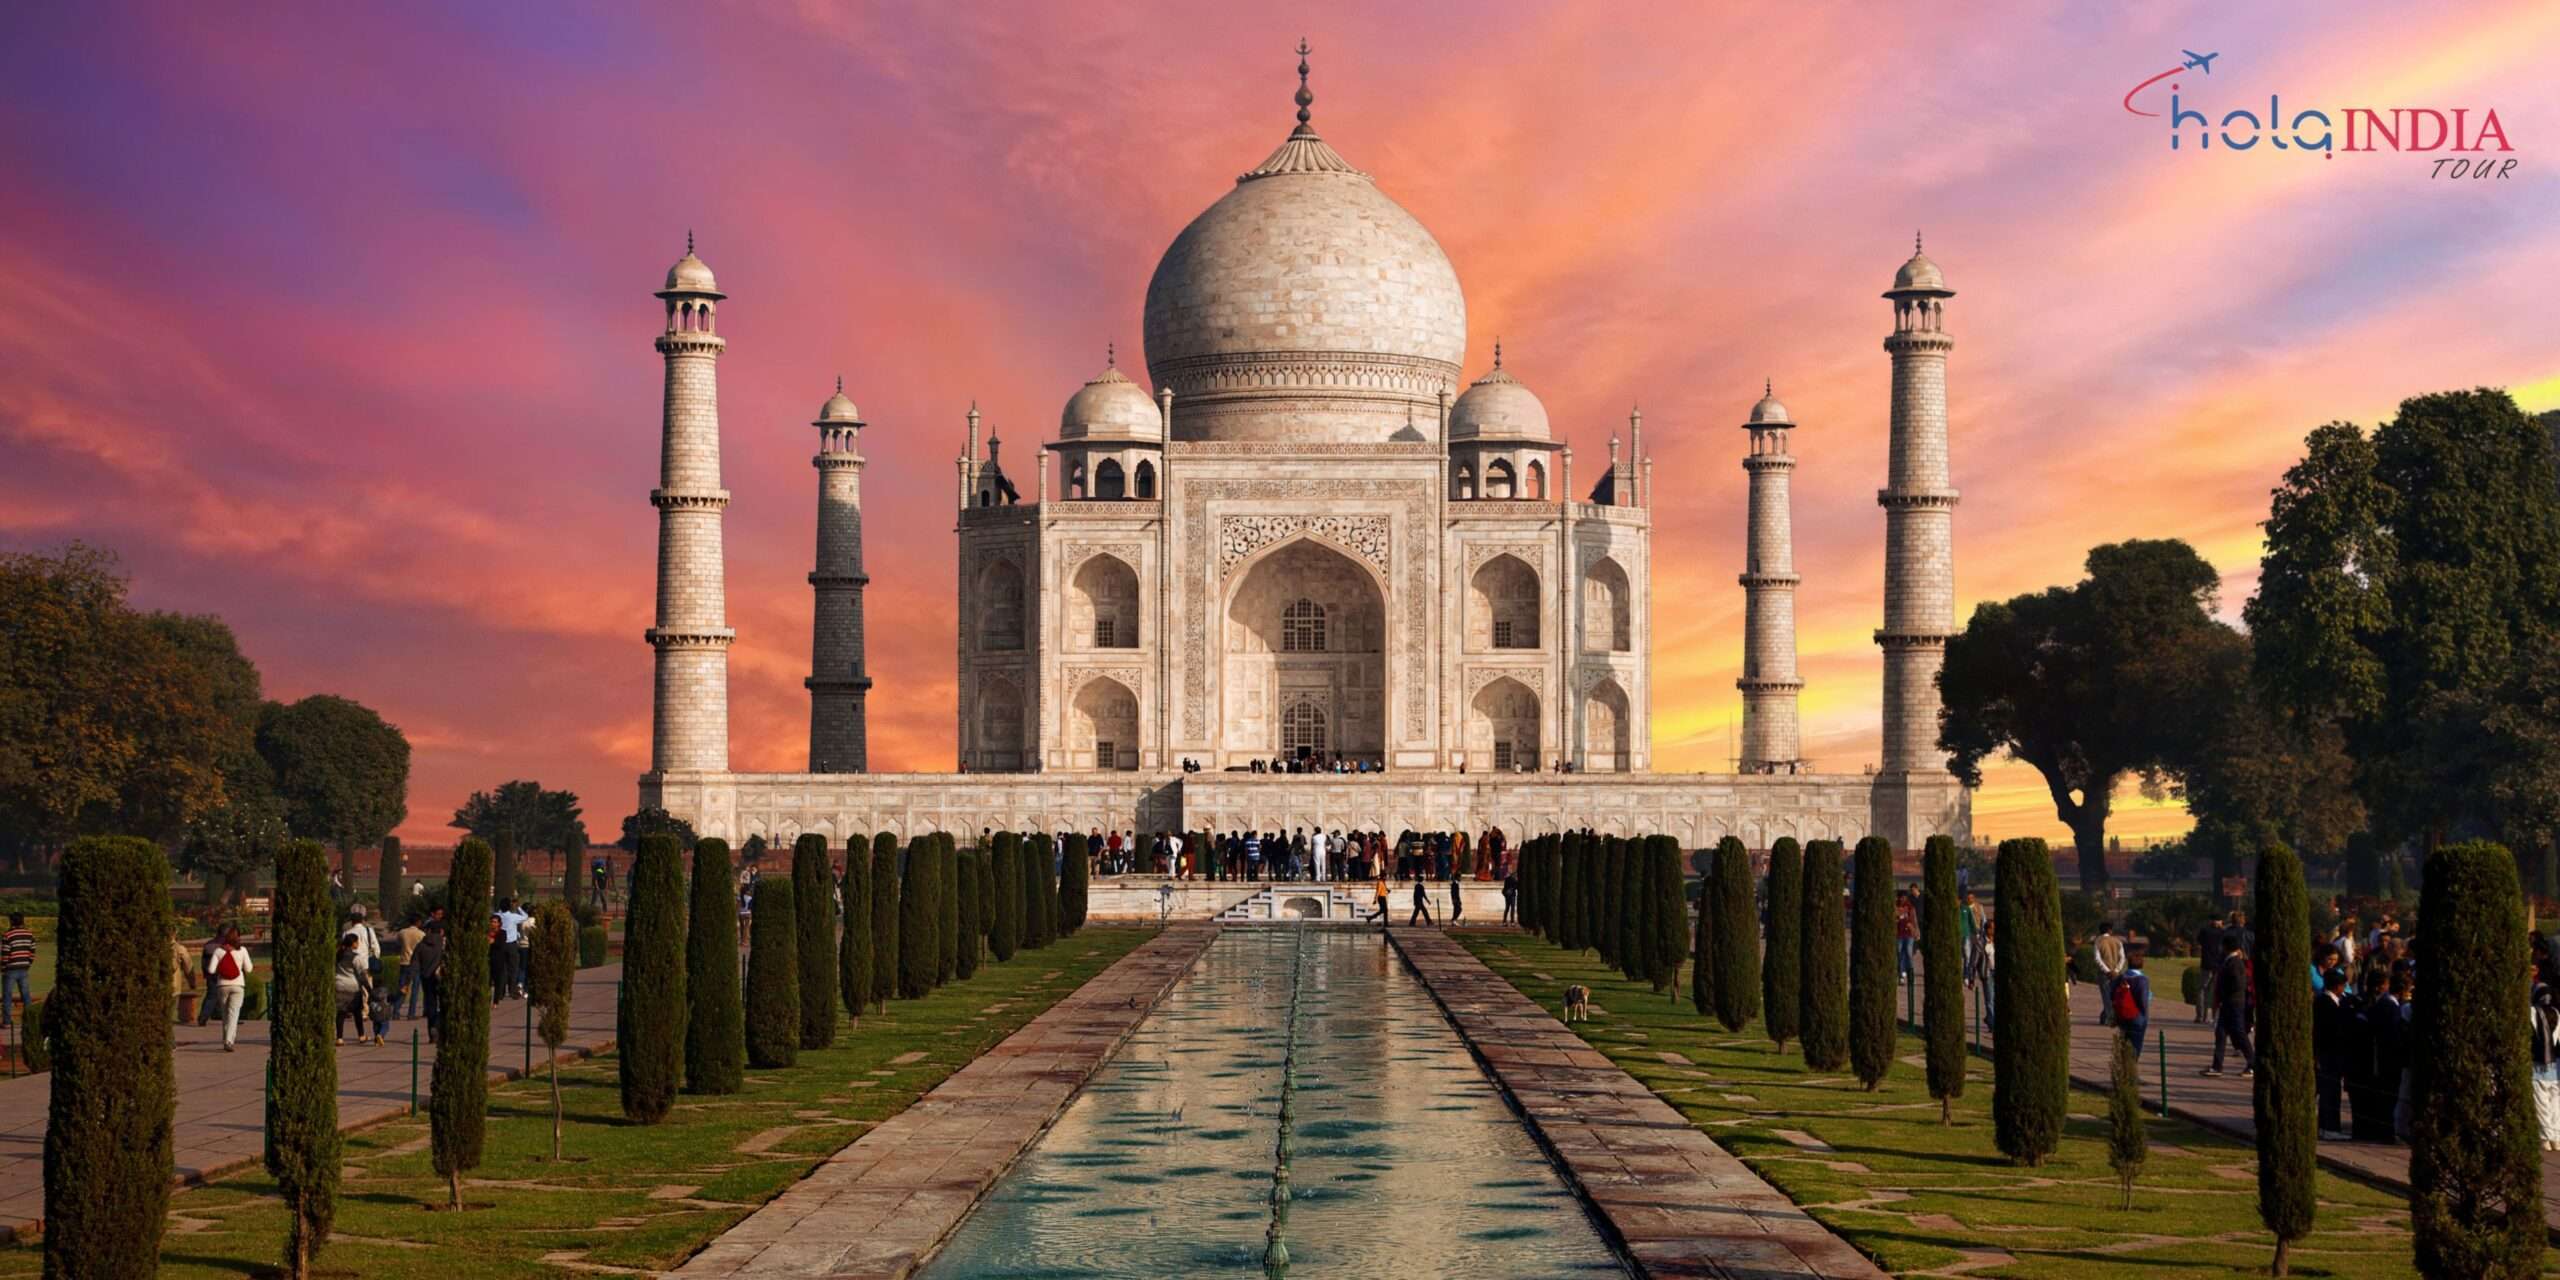 Cu L Es La Verdadera Historia Del Taj Mahal Hola India Tour